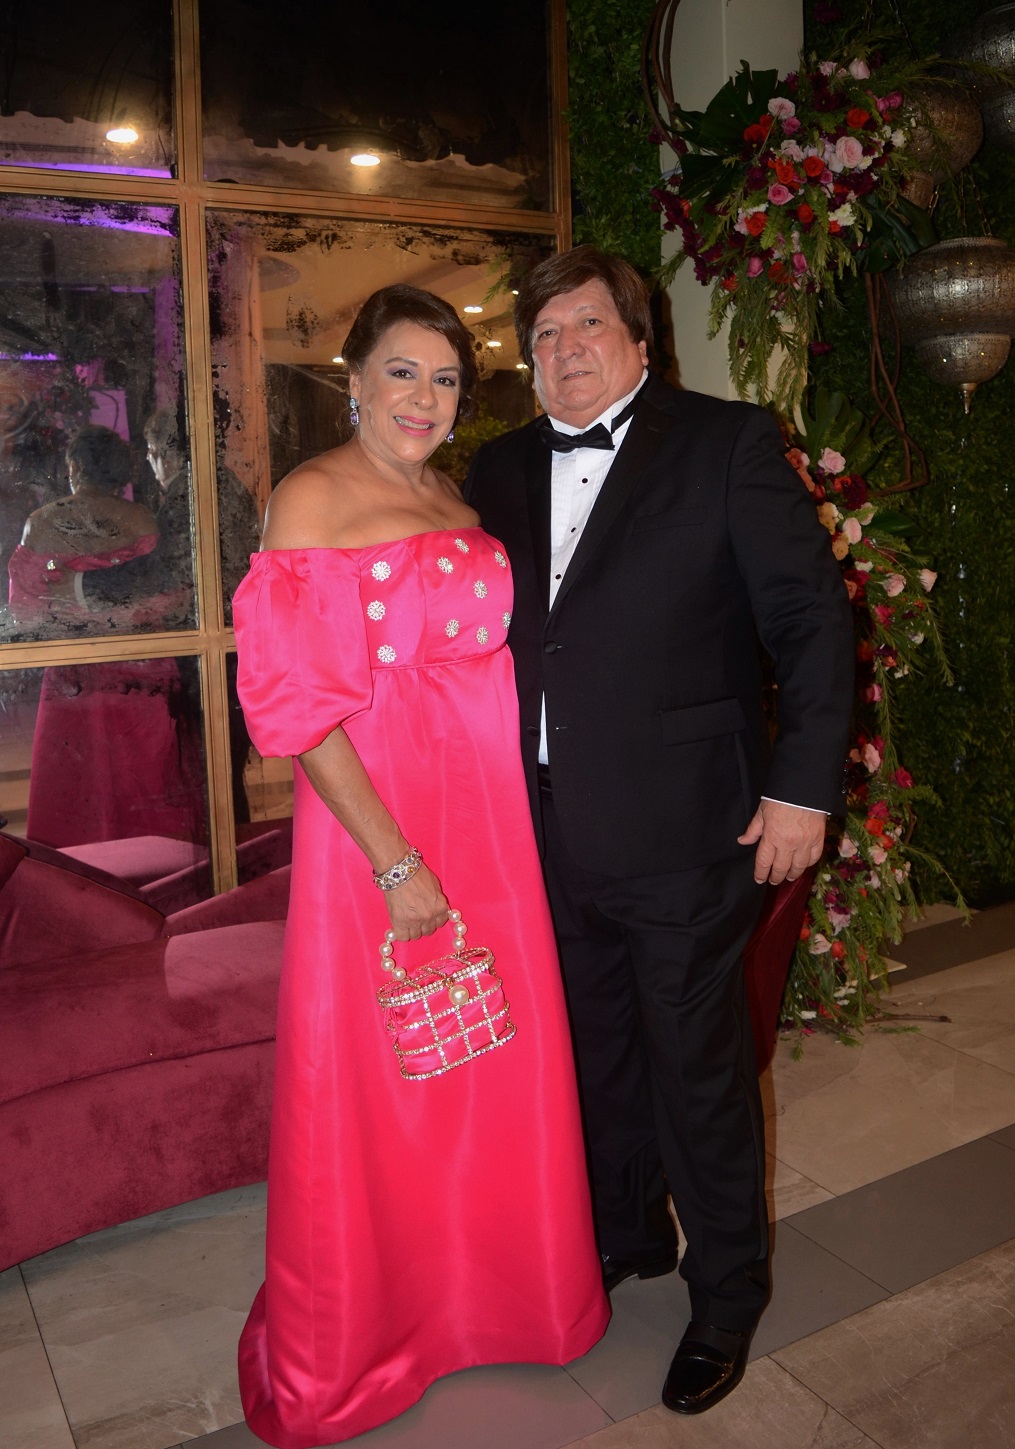 La boda de Basilio Fuschich y Susana Gamero…una gran fiesta de amor con mucha magia